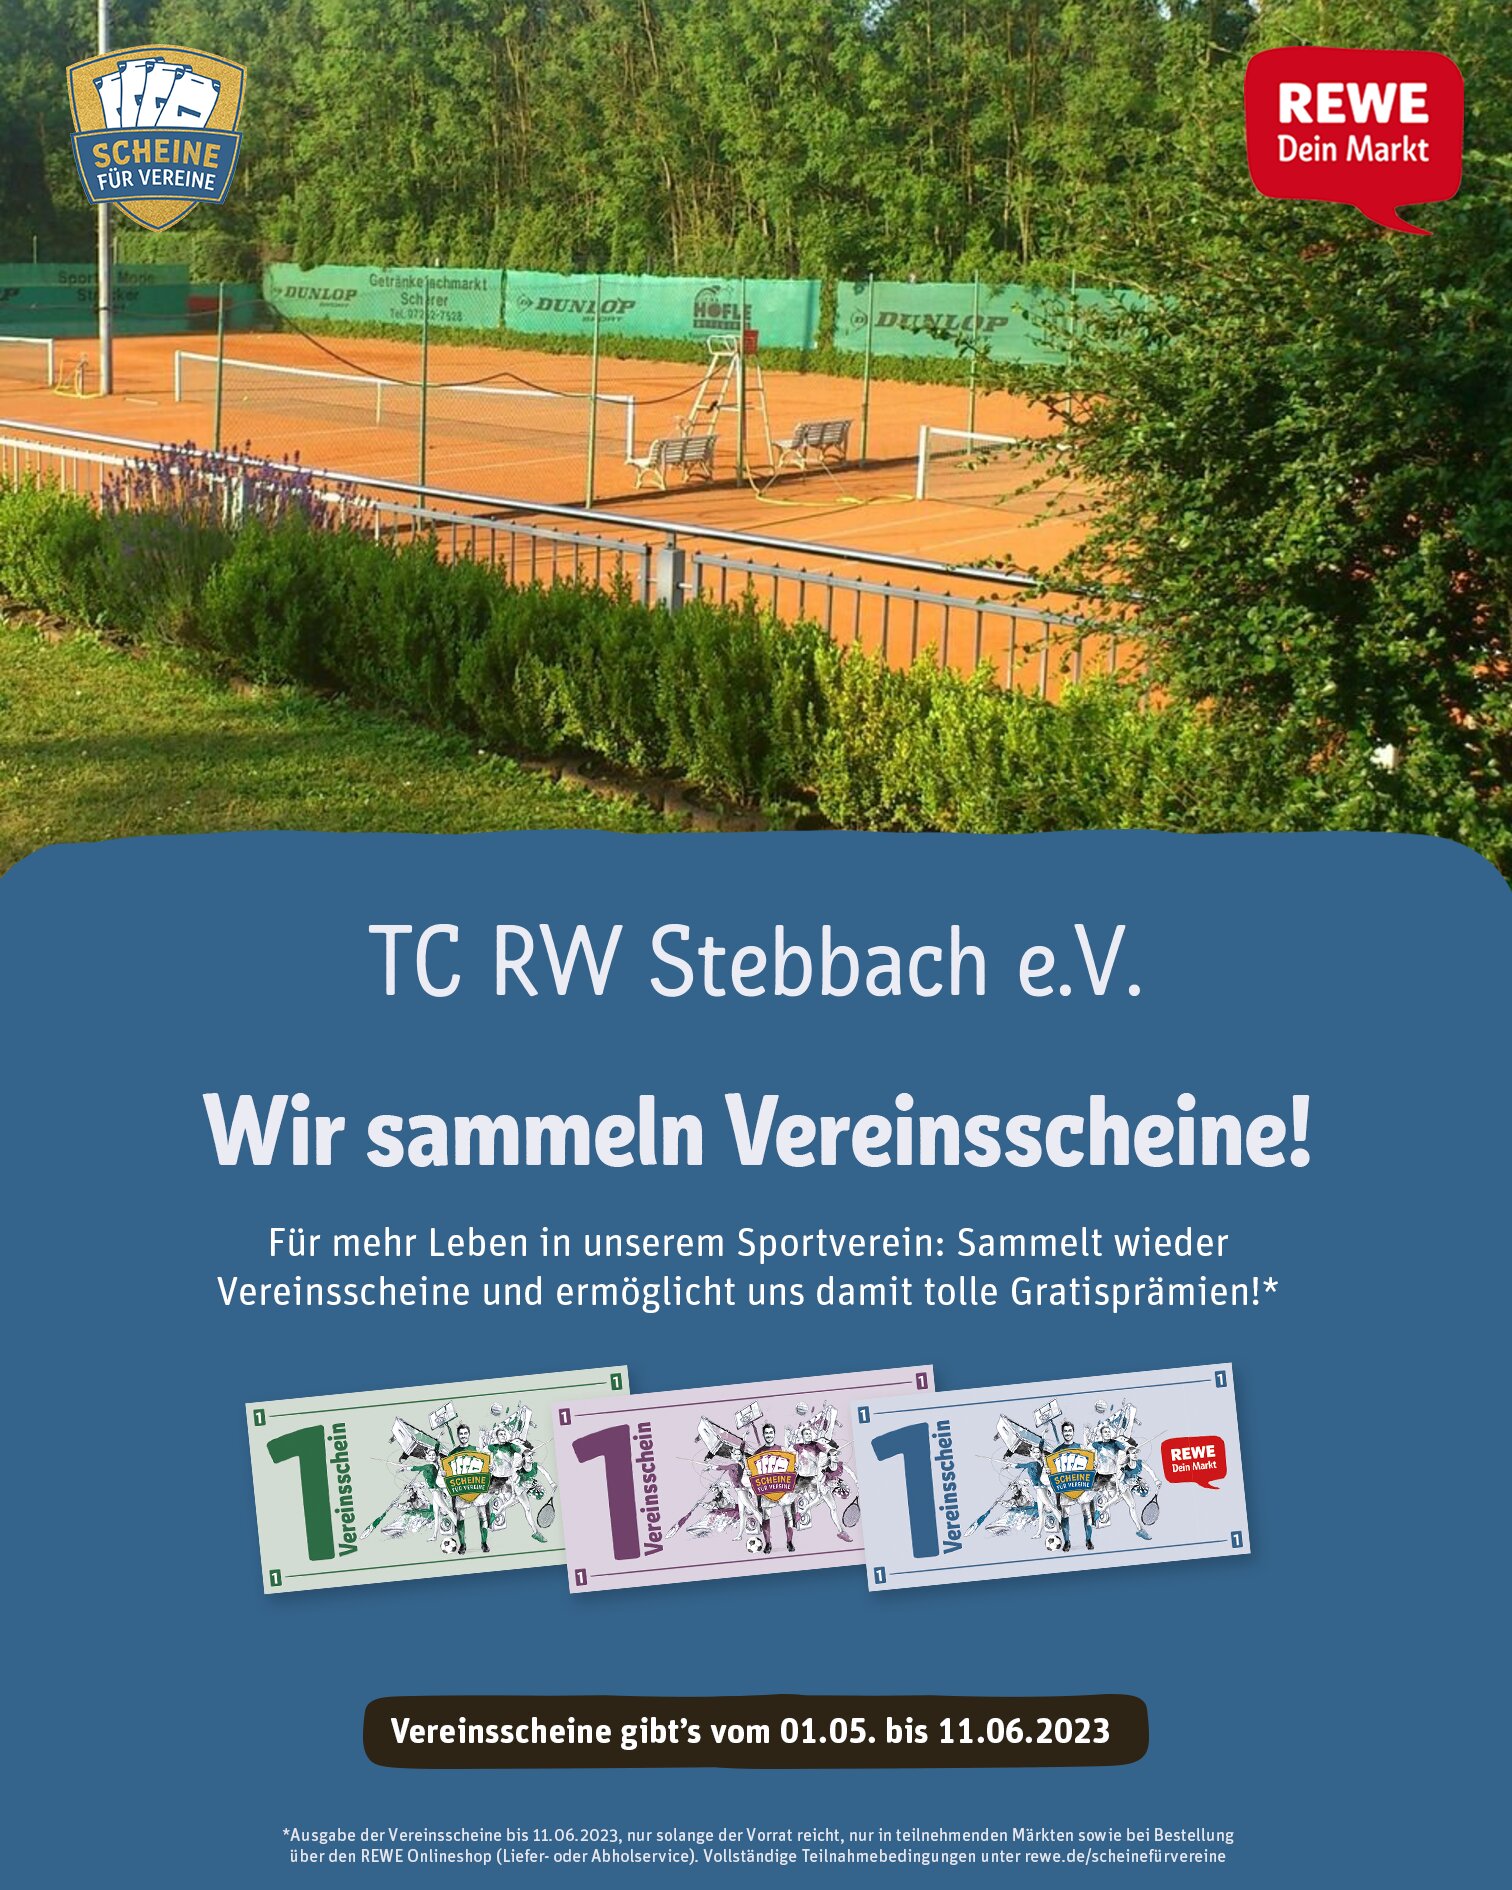 REWE_Scheine-fuer-Vereine_Poster-Feed.jpg